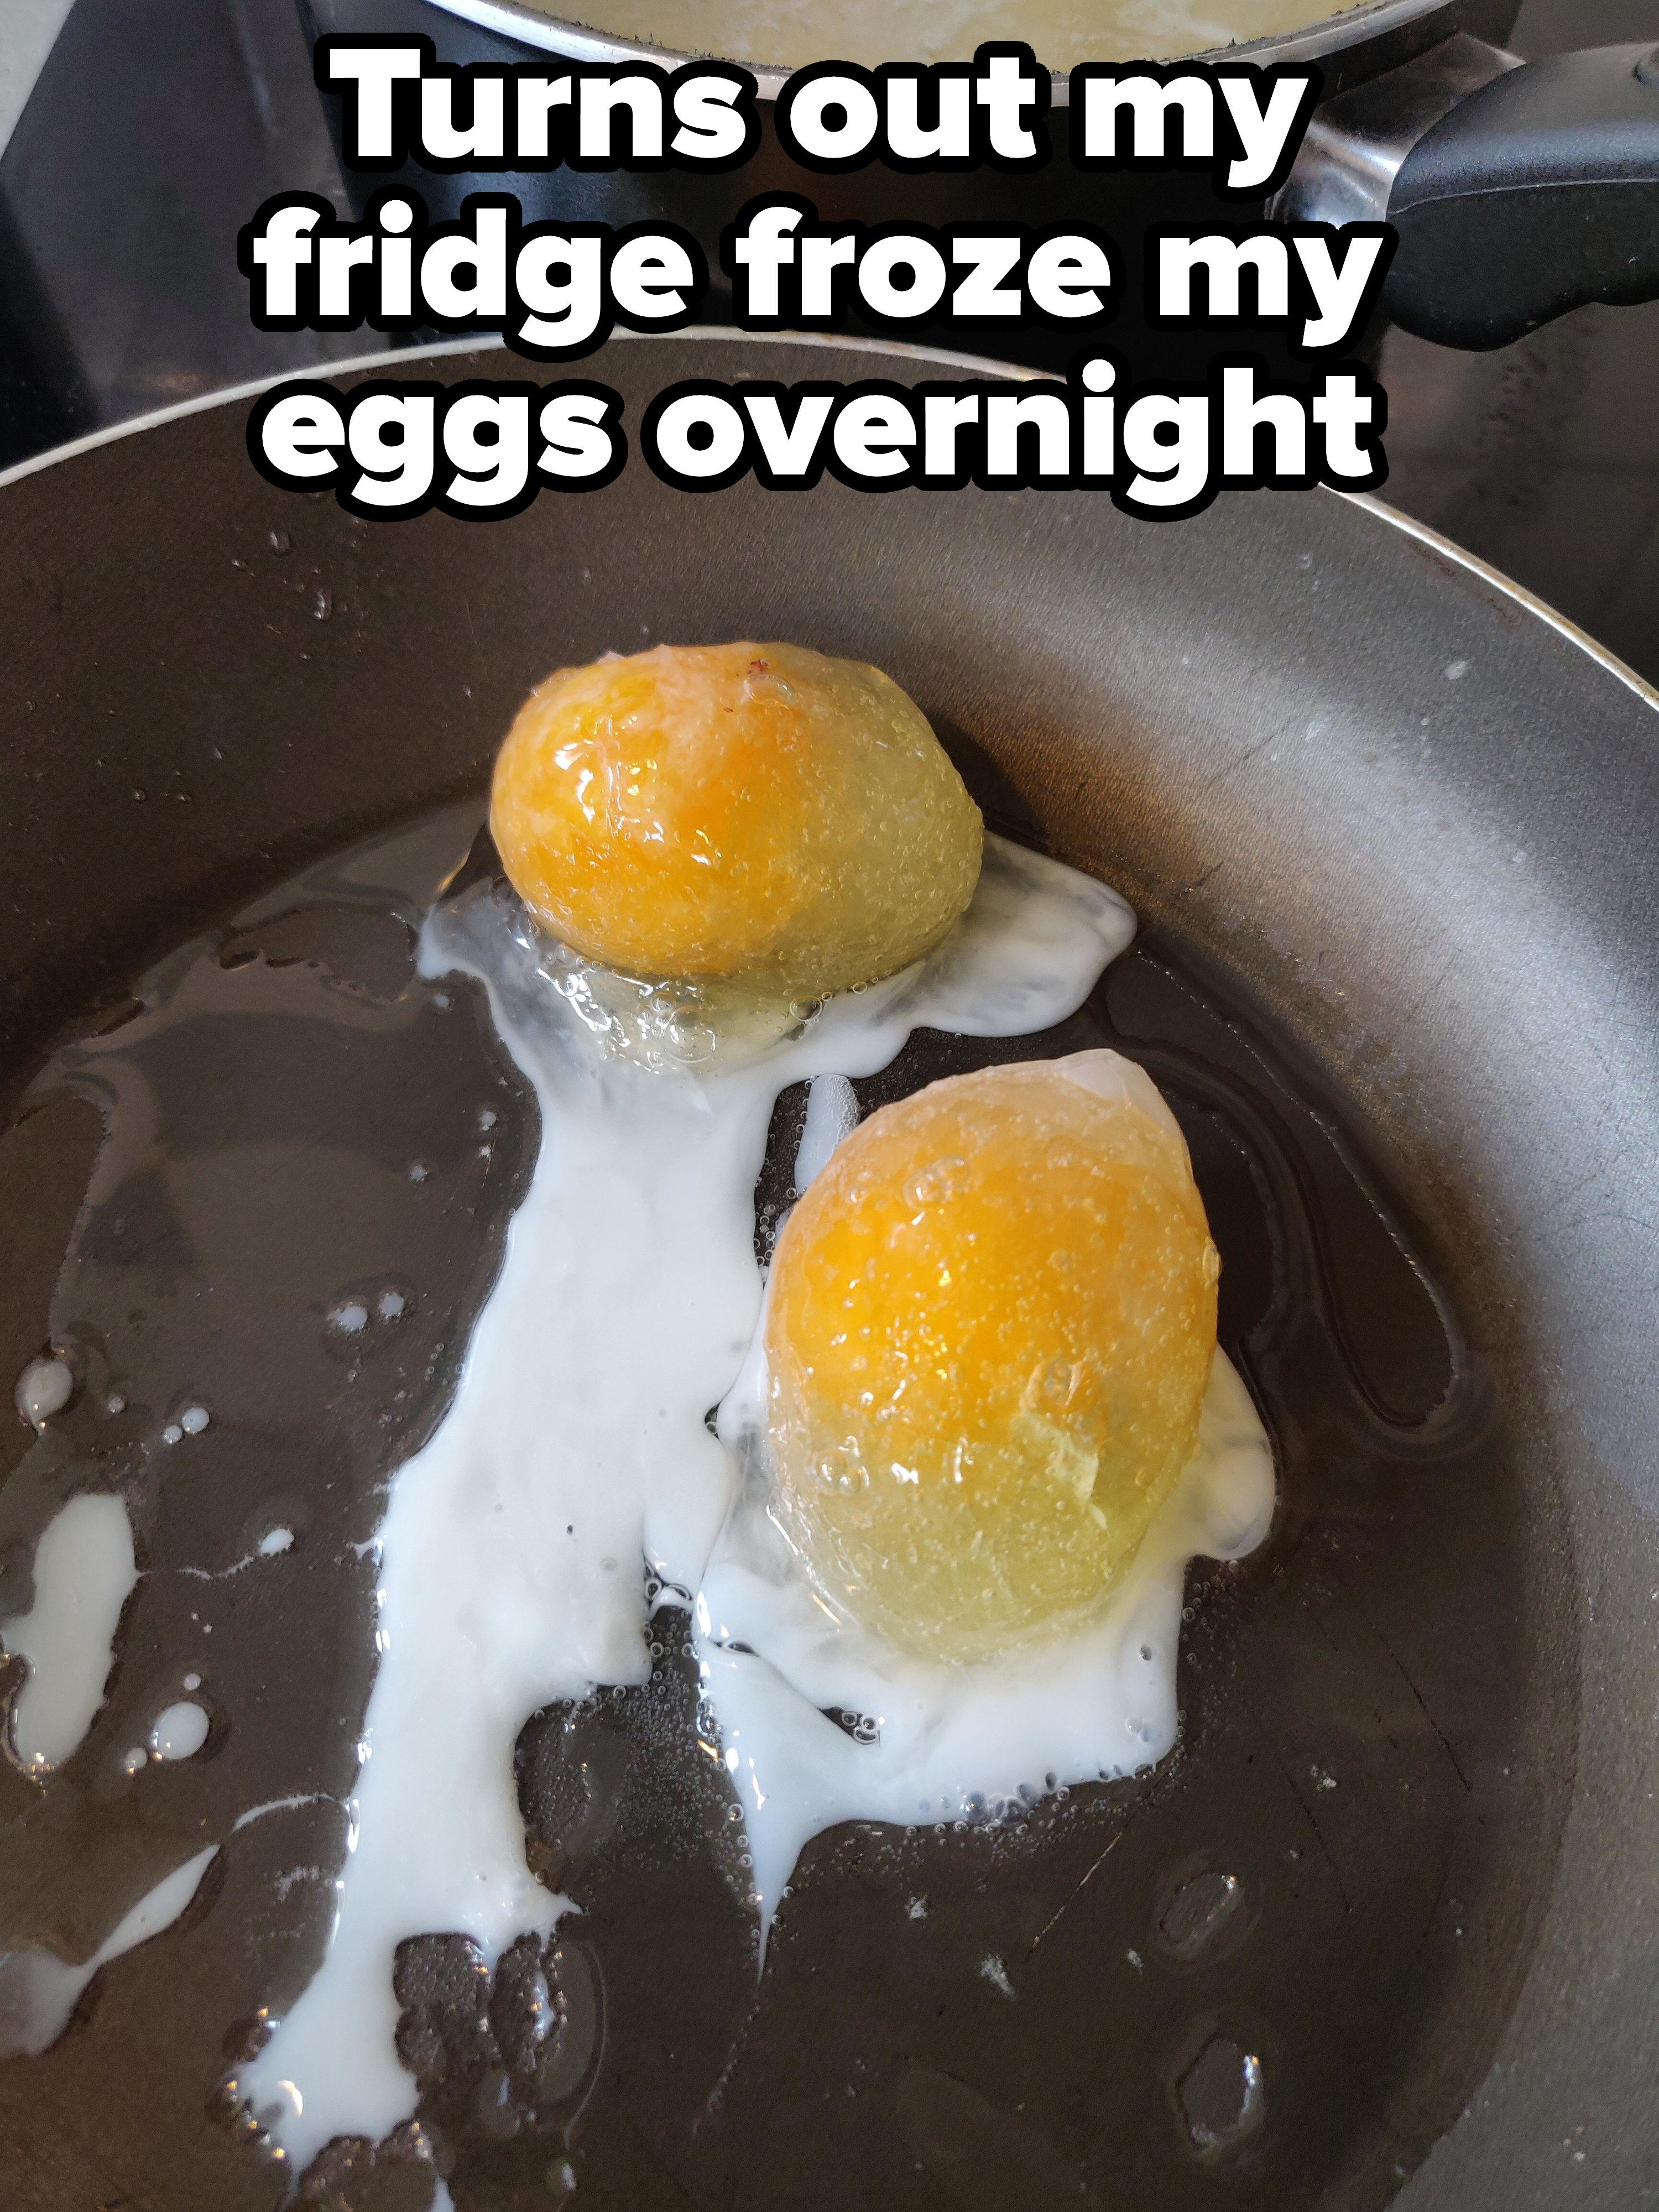 Eggs still frozen in a frying pan